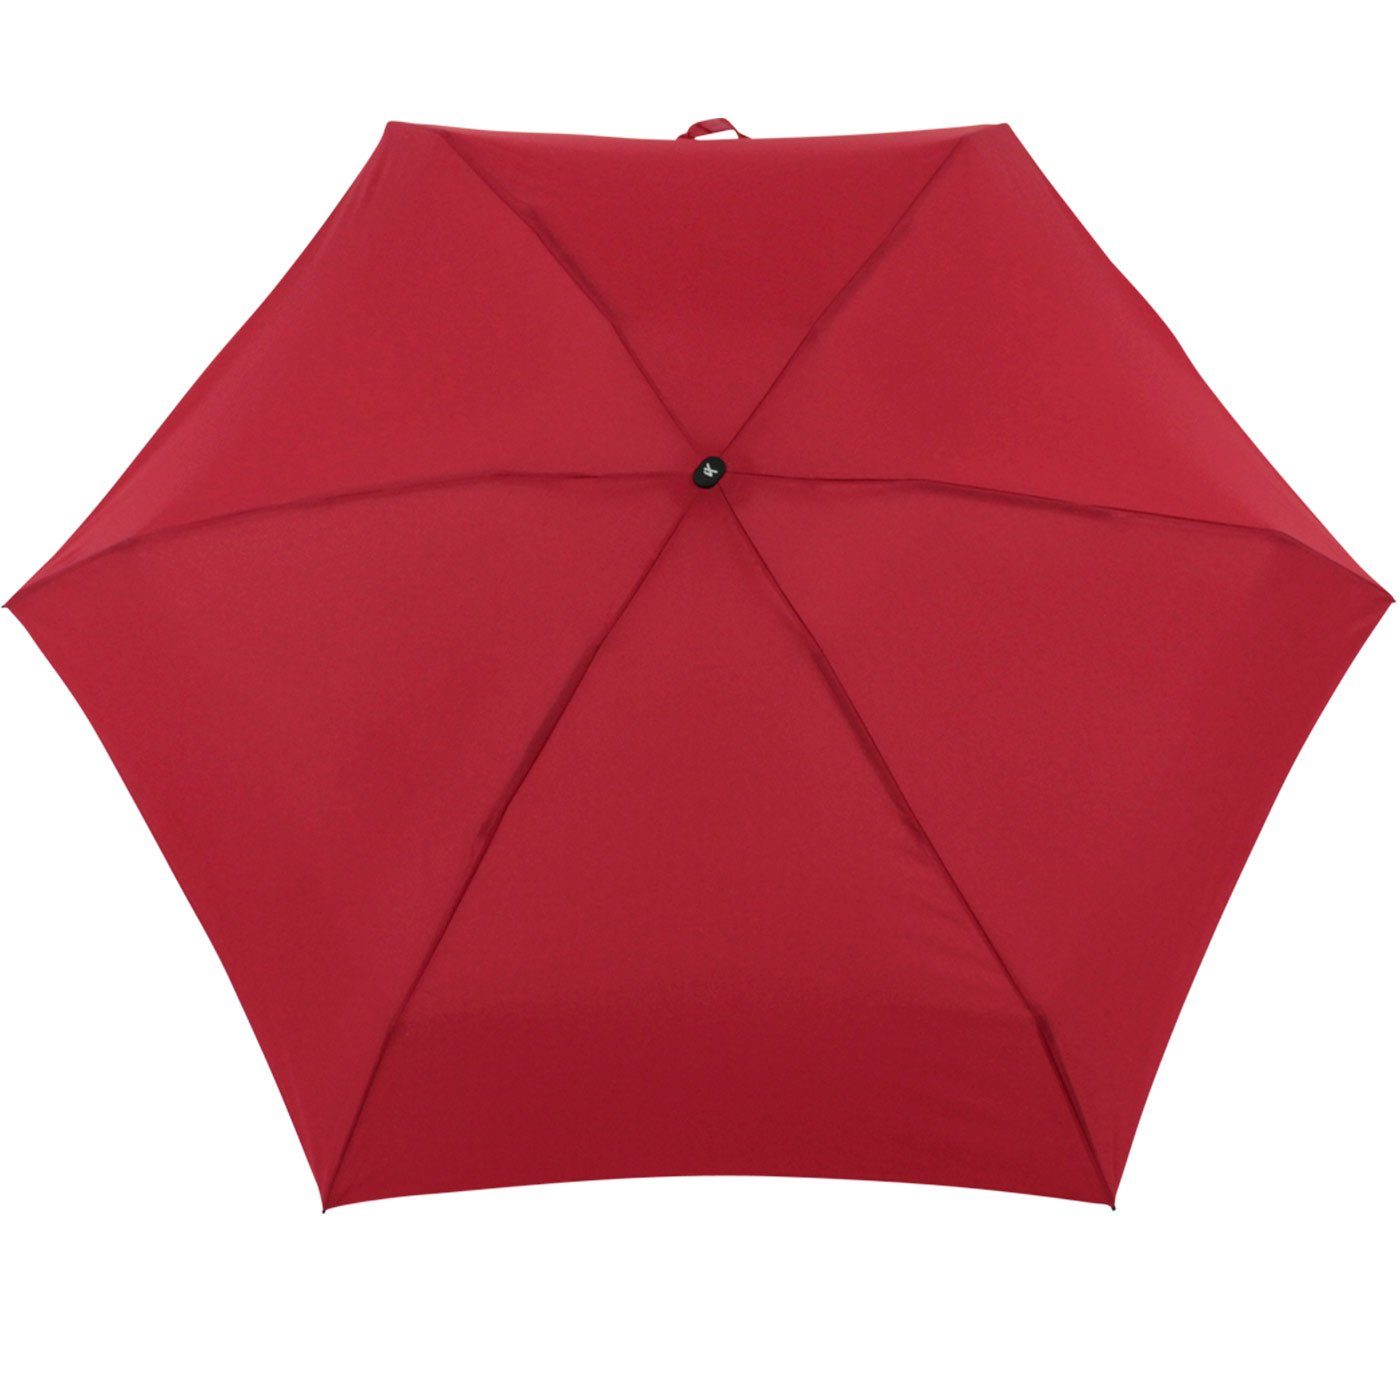 iX-brella Taschenregenschirm Super Mini super-mini mit kleiner großem, 94cm cm dunkelrot Schirm 18